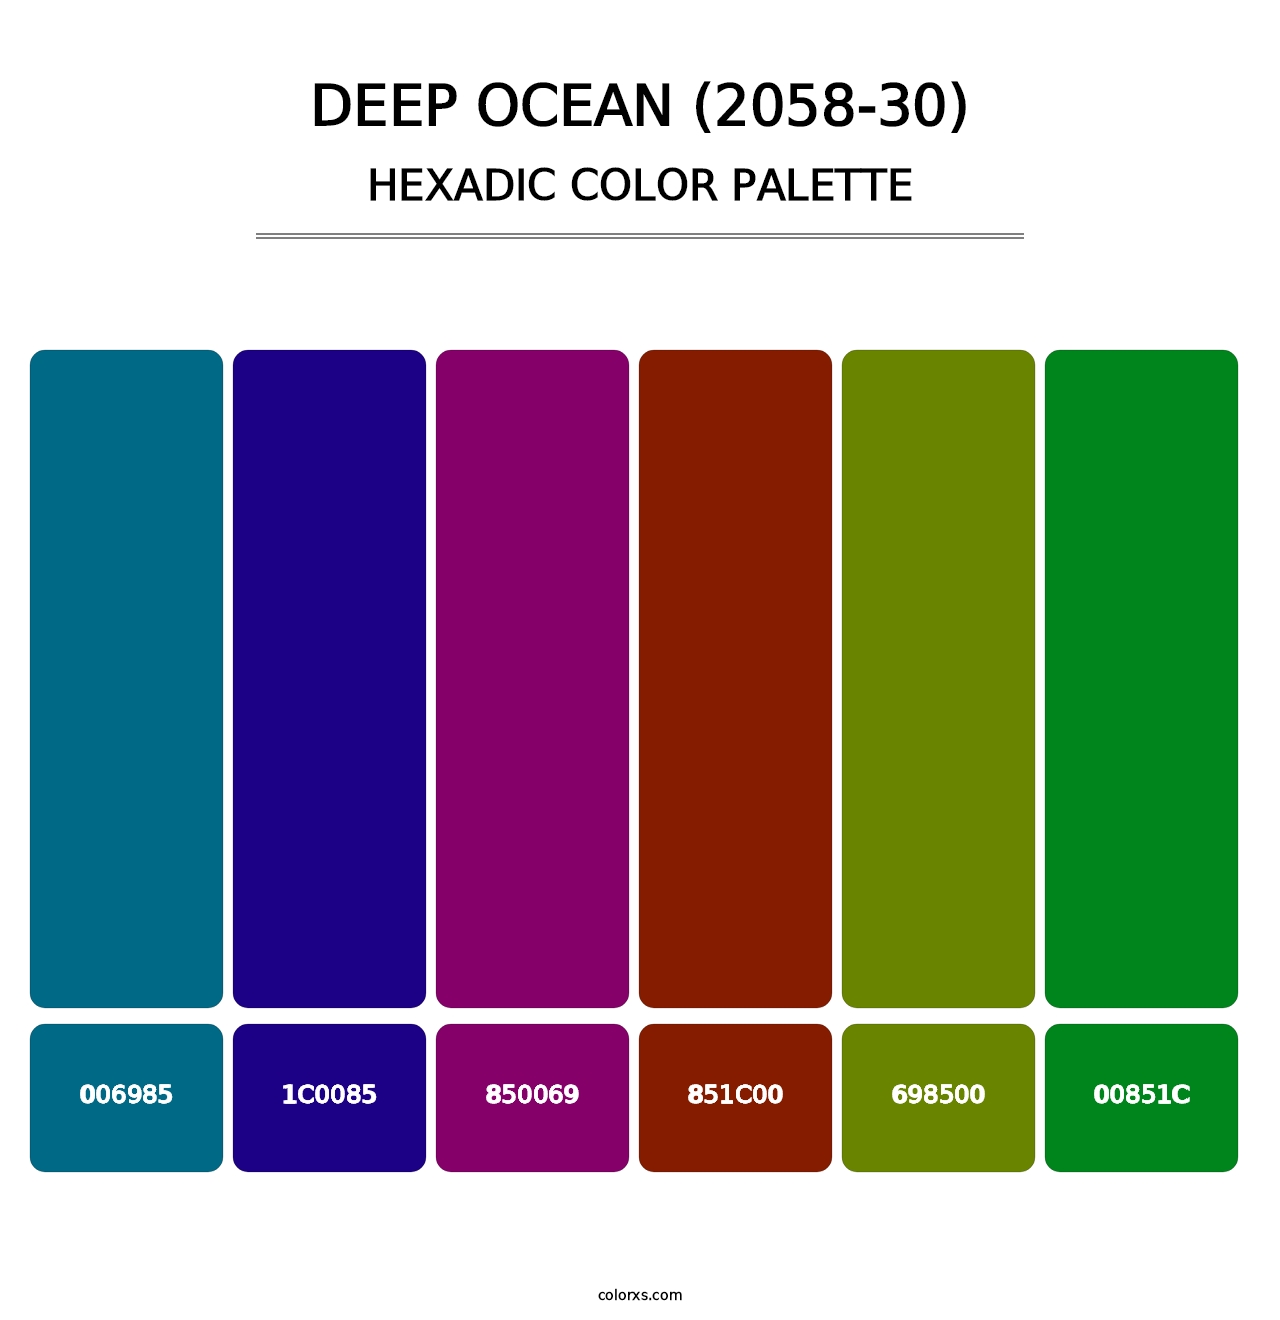 Deep Ocean (2058-30) - Hexadic Color Palette